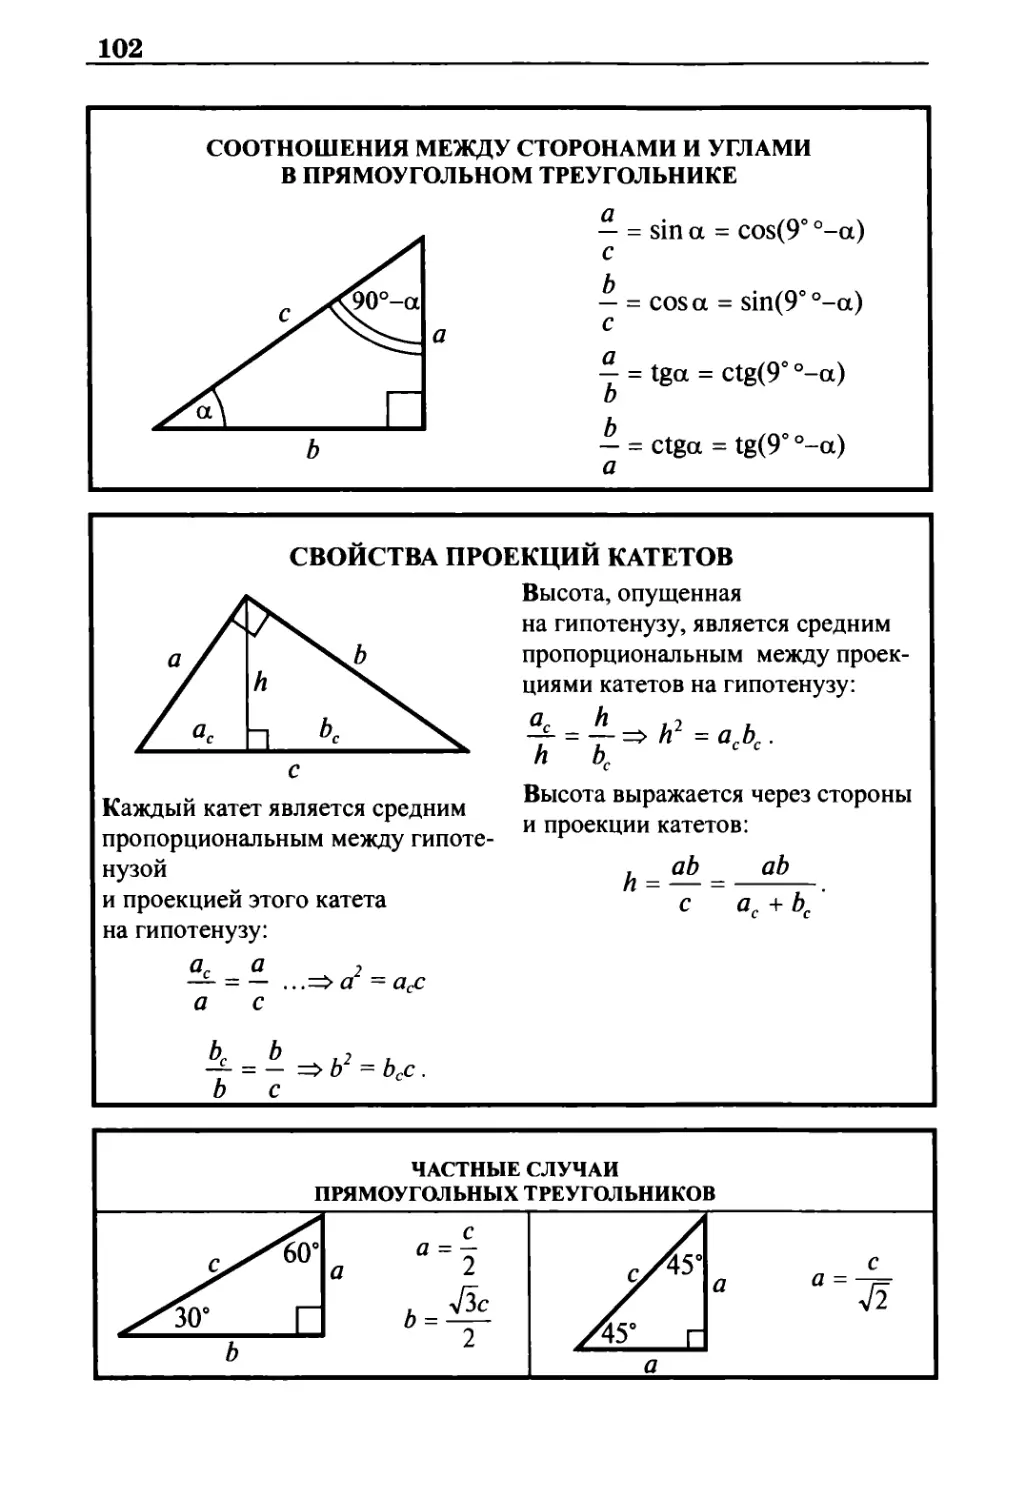 Соотношения между сторонами и углами в прямоугольном треугольнике
Свойства проекций катетов
Частные случаи прямоугольных треугольников